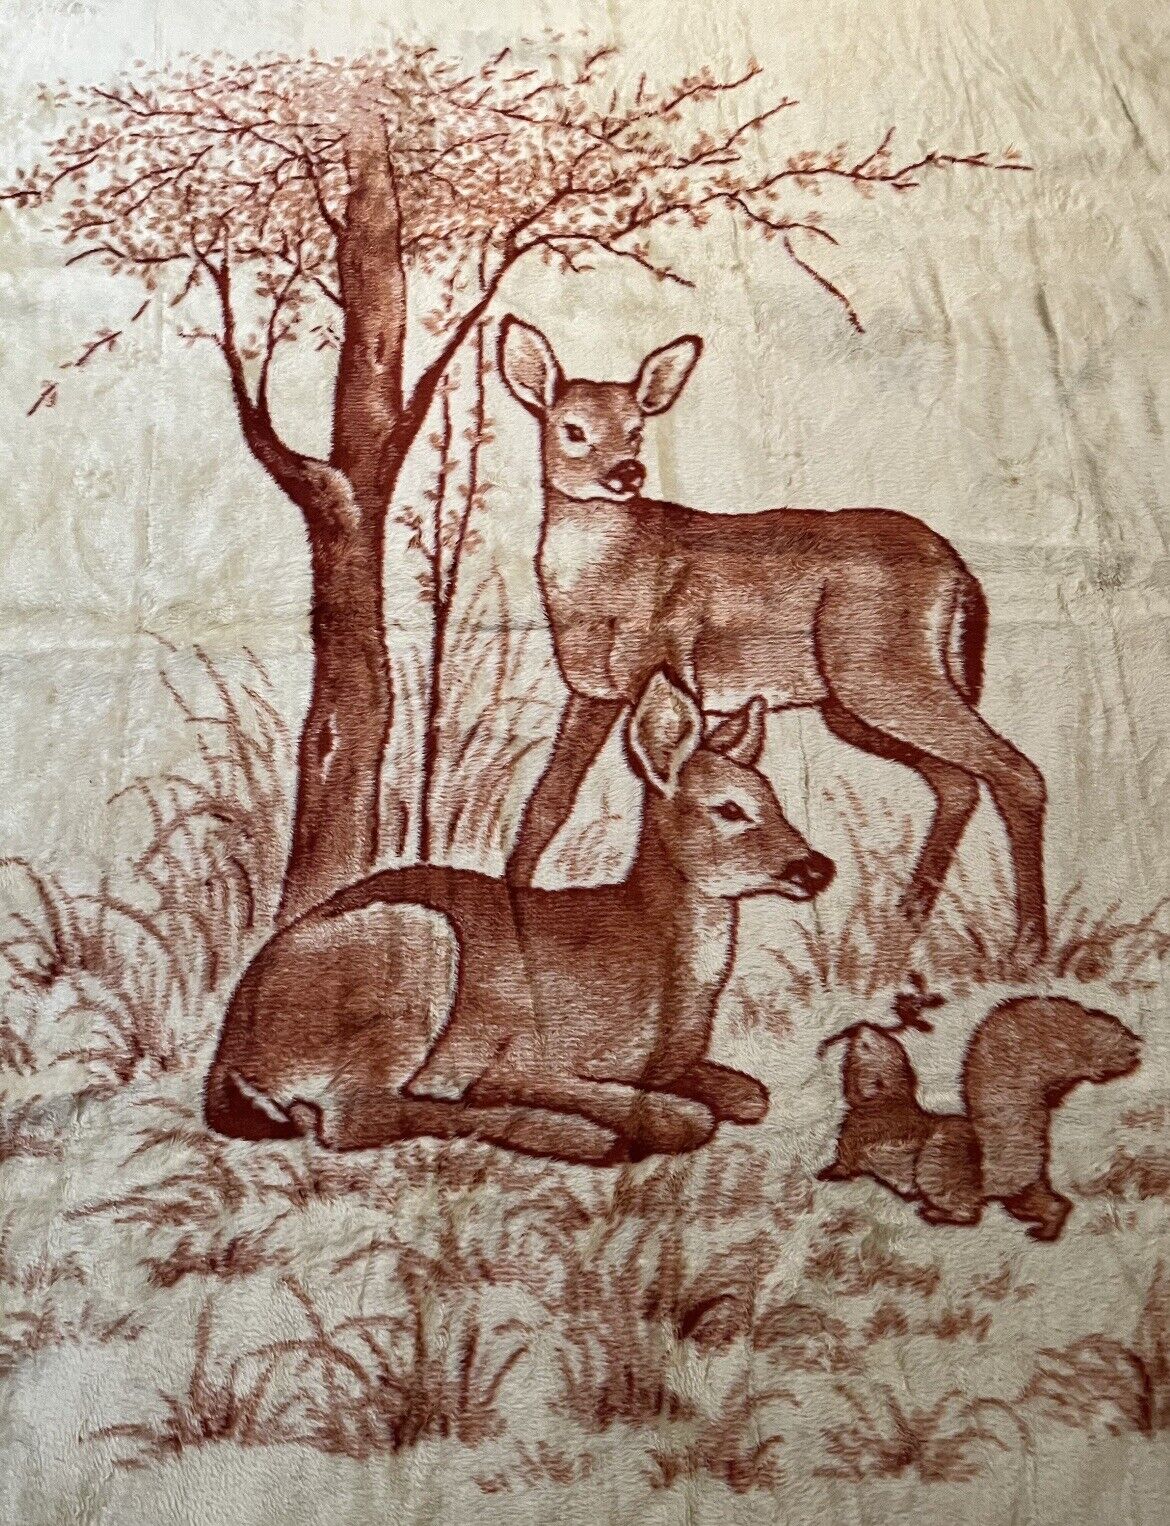 Vintage San Marcos Reversible Blanket - Deer & Squirrel Scene - 72” x 92” - New